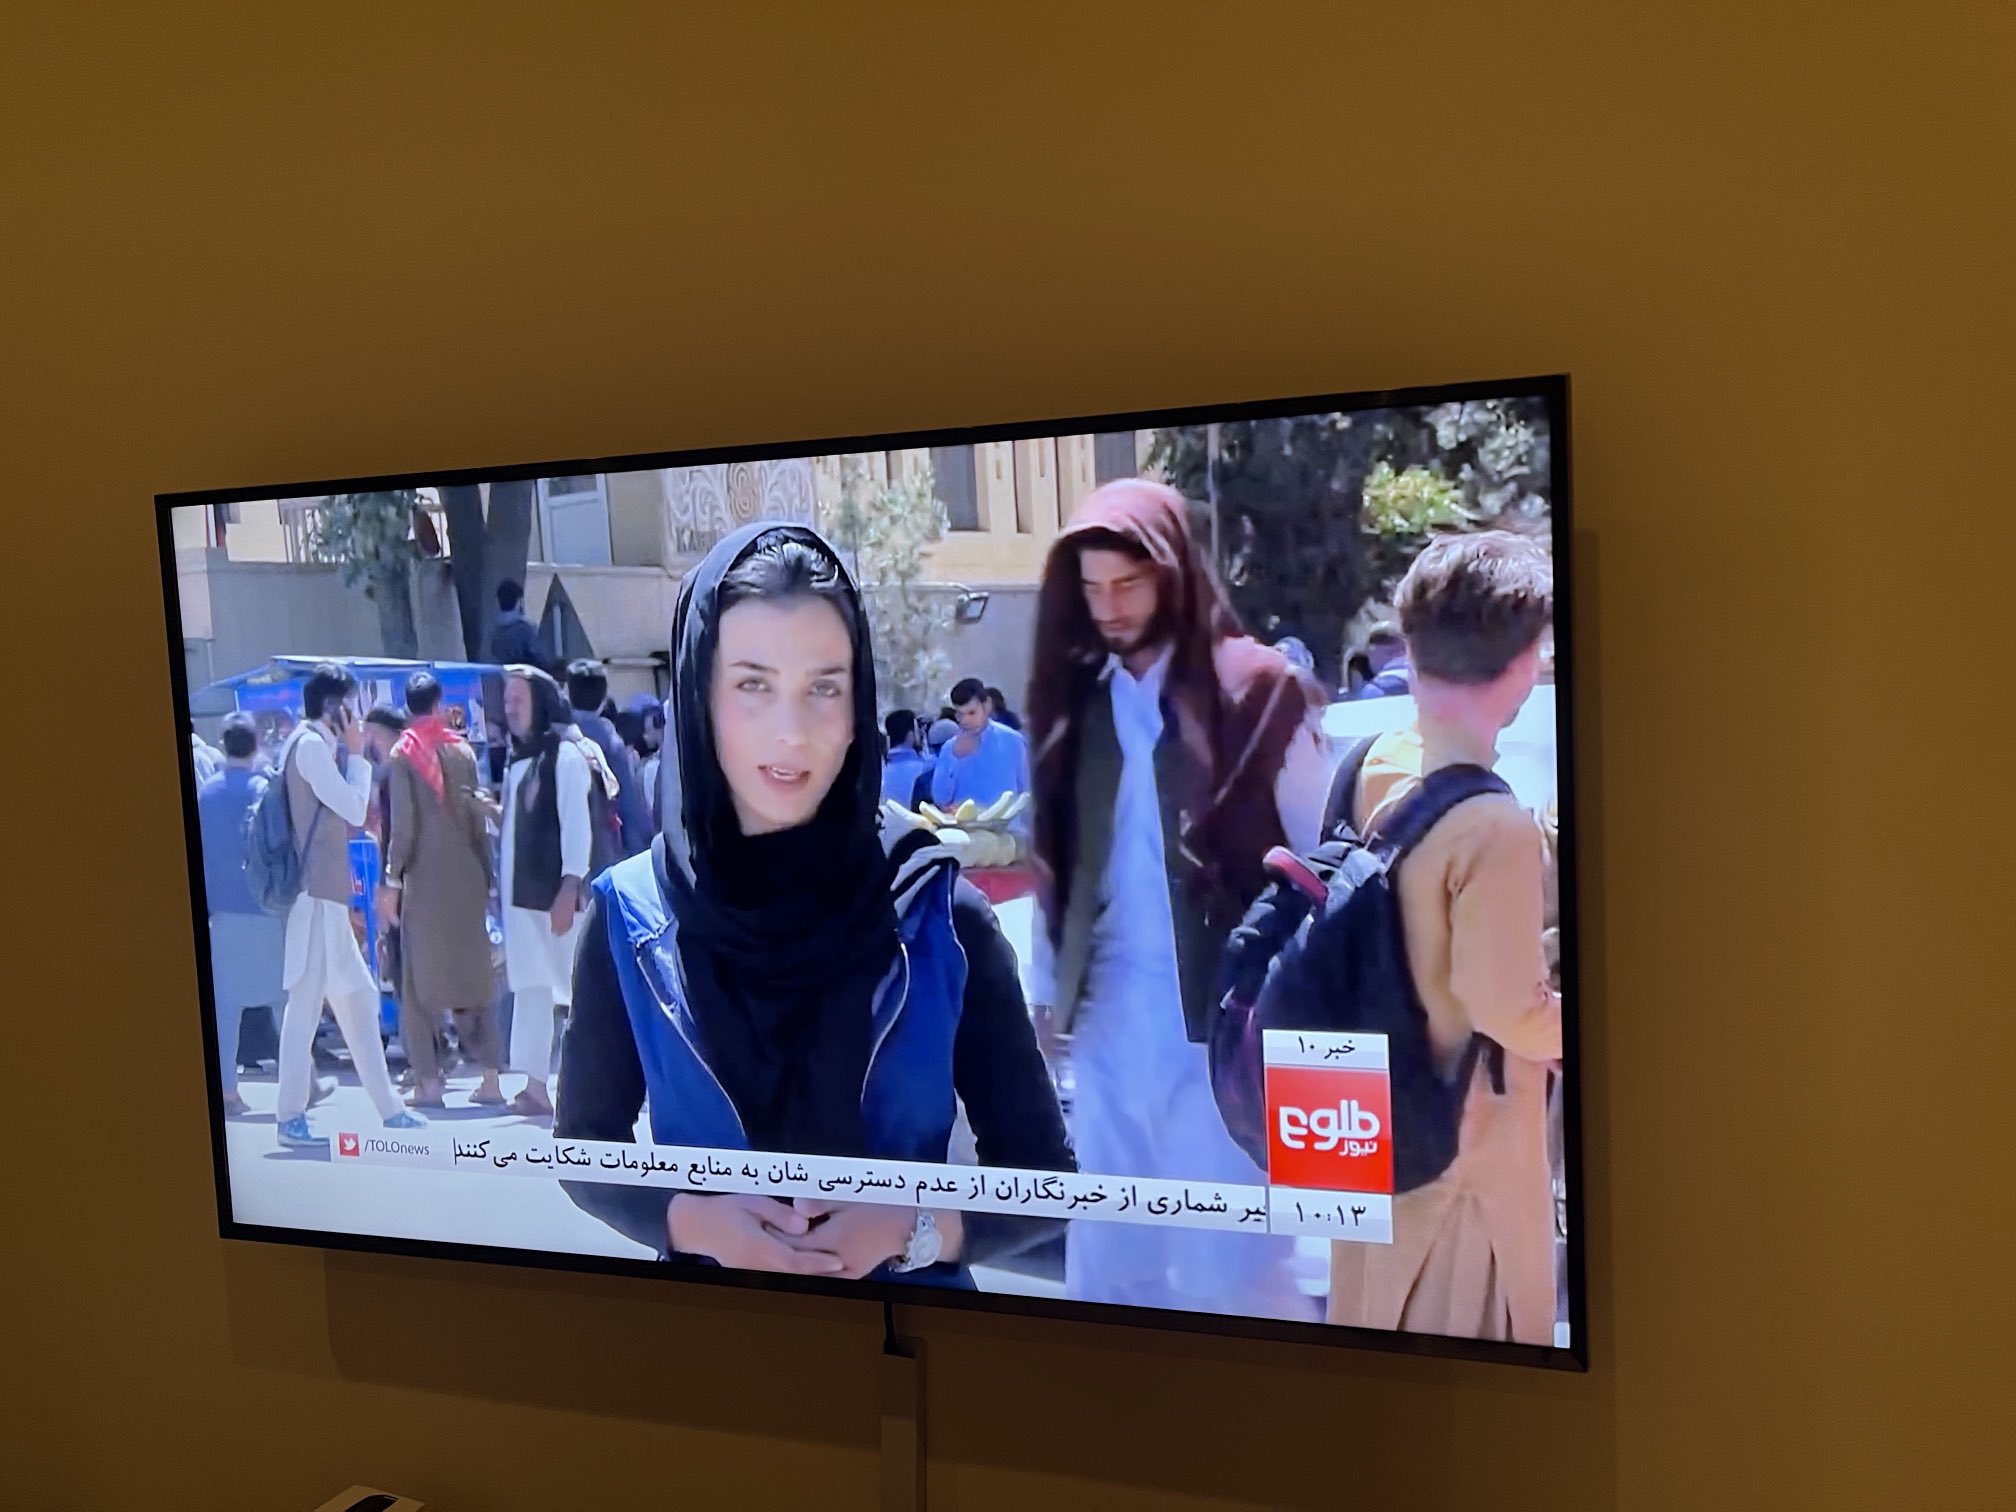 Koalicioni për Gratë në Gazetari i bën thirrje kryeministrit Rama të strehojë gratë afgane gazetare dhe aktiviste